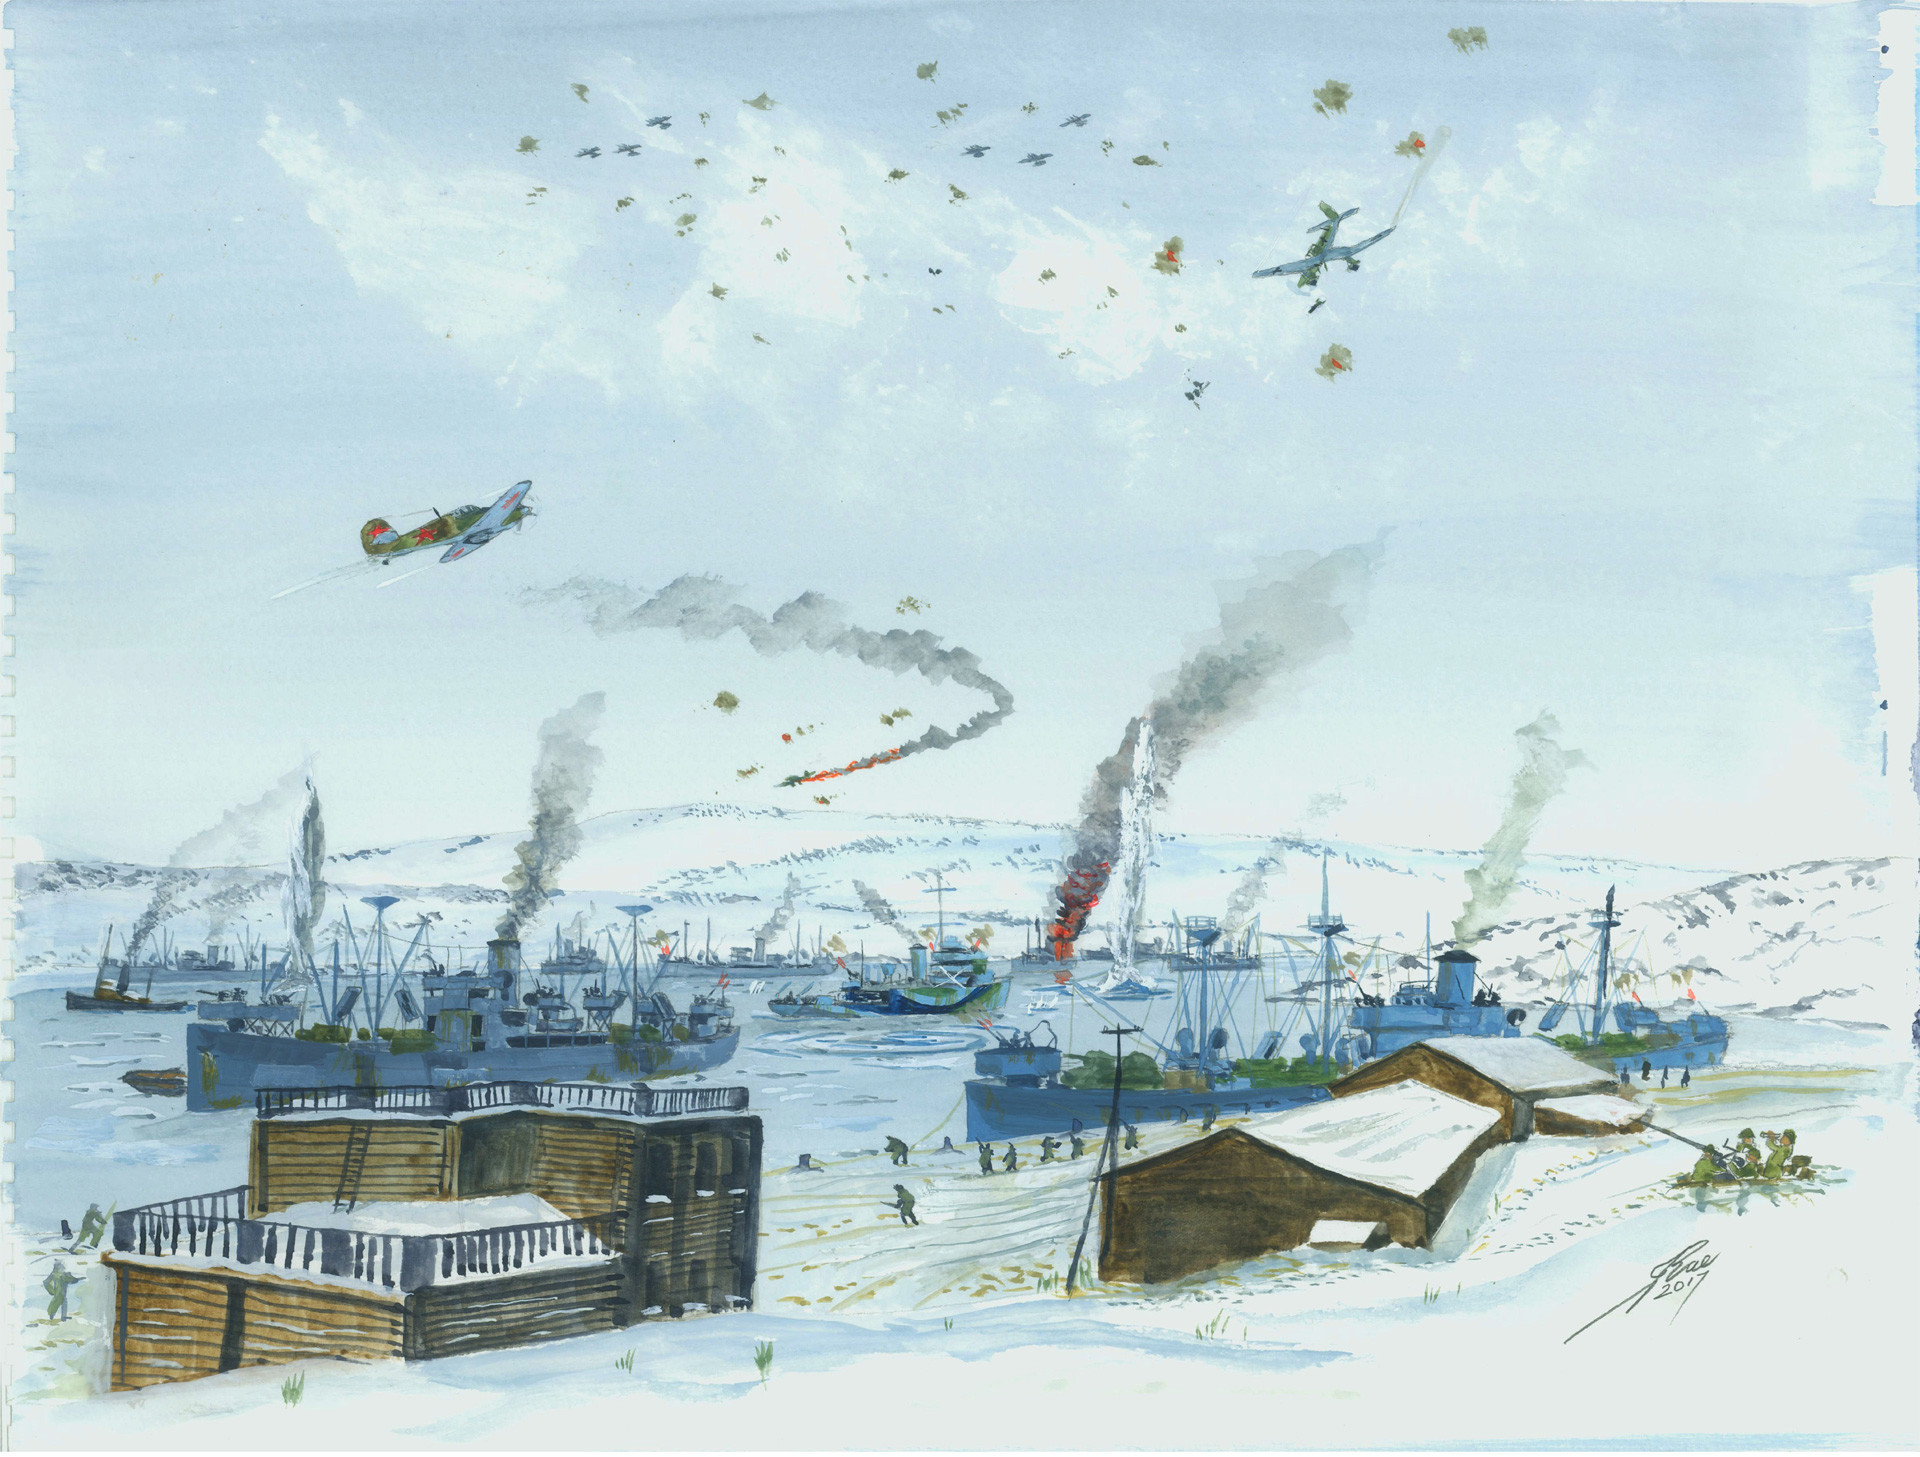 German Stukas attack convoy at Murmansk docks